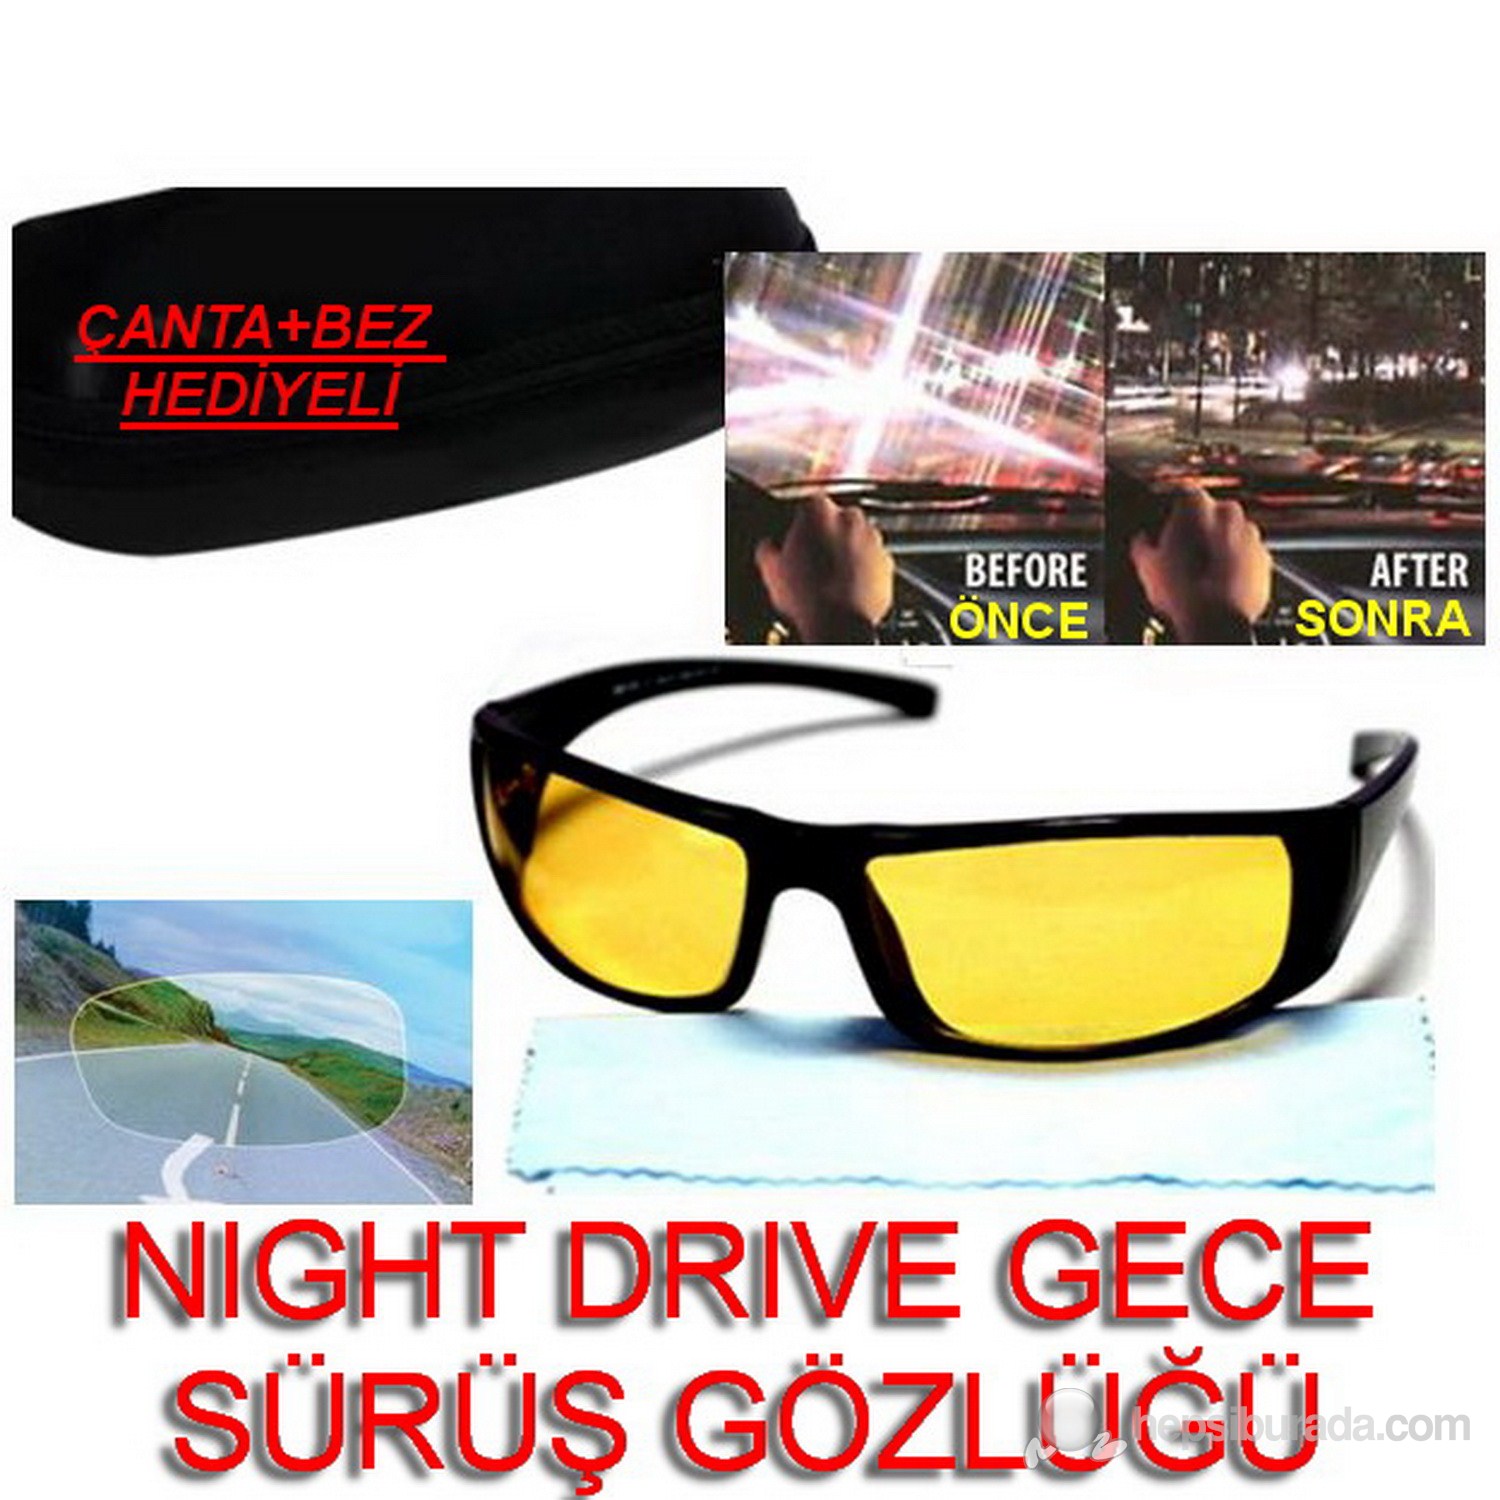 Night Drive Gece Sürüş Gözlüğü Çanta Ve Bez Hediyeli 9712001